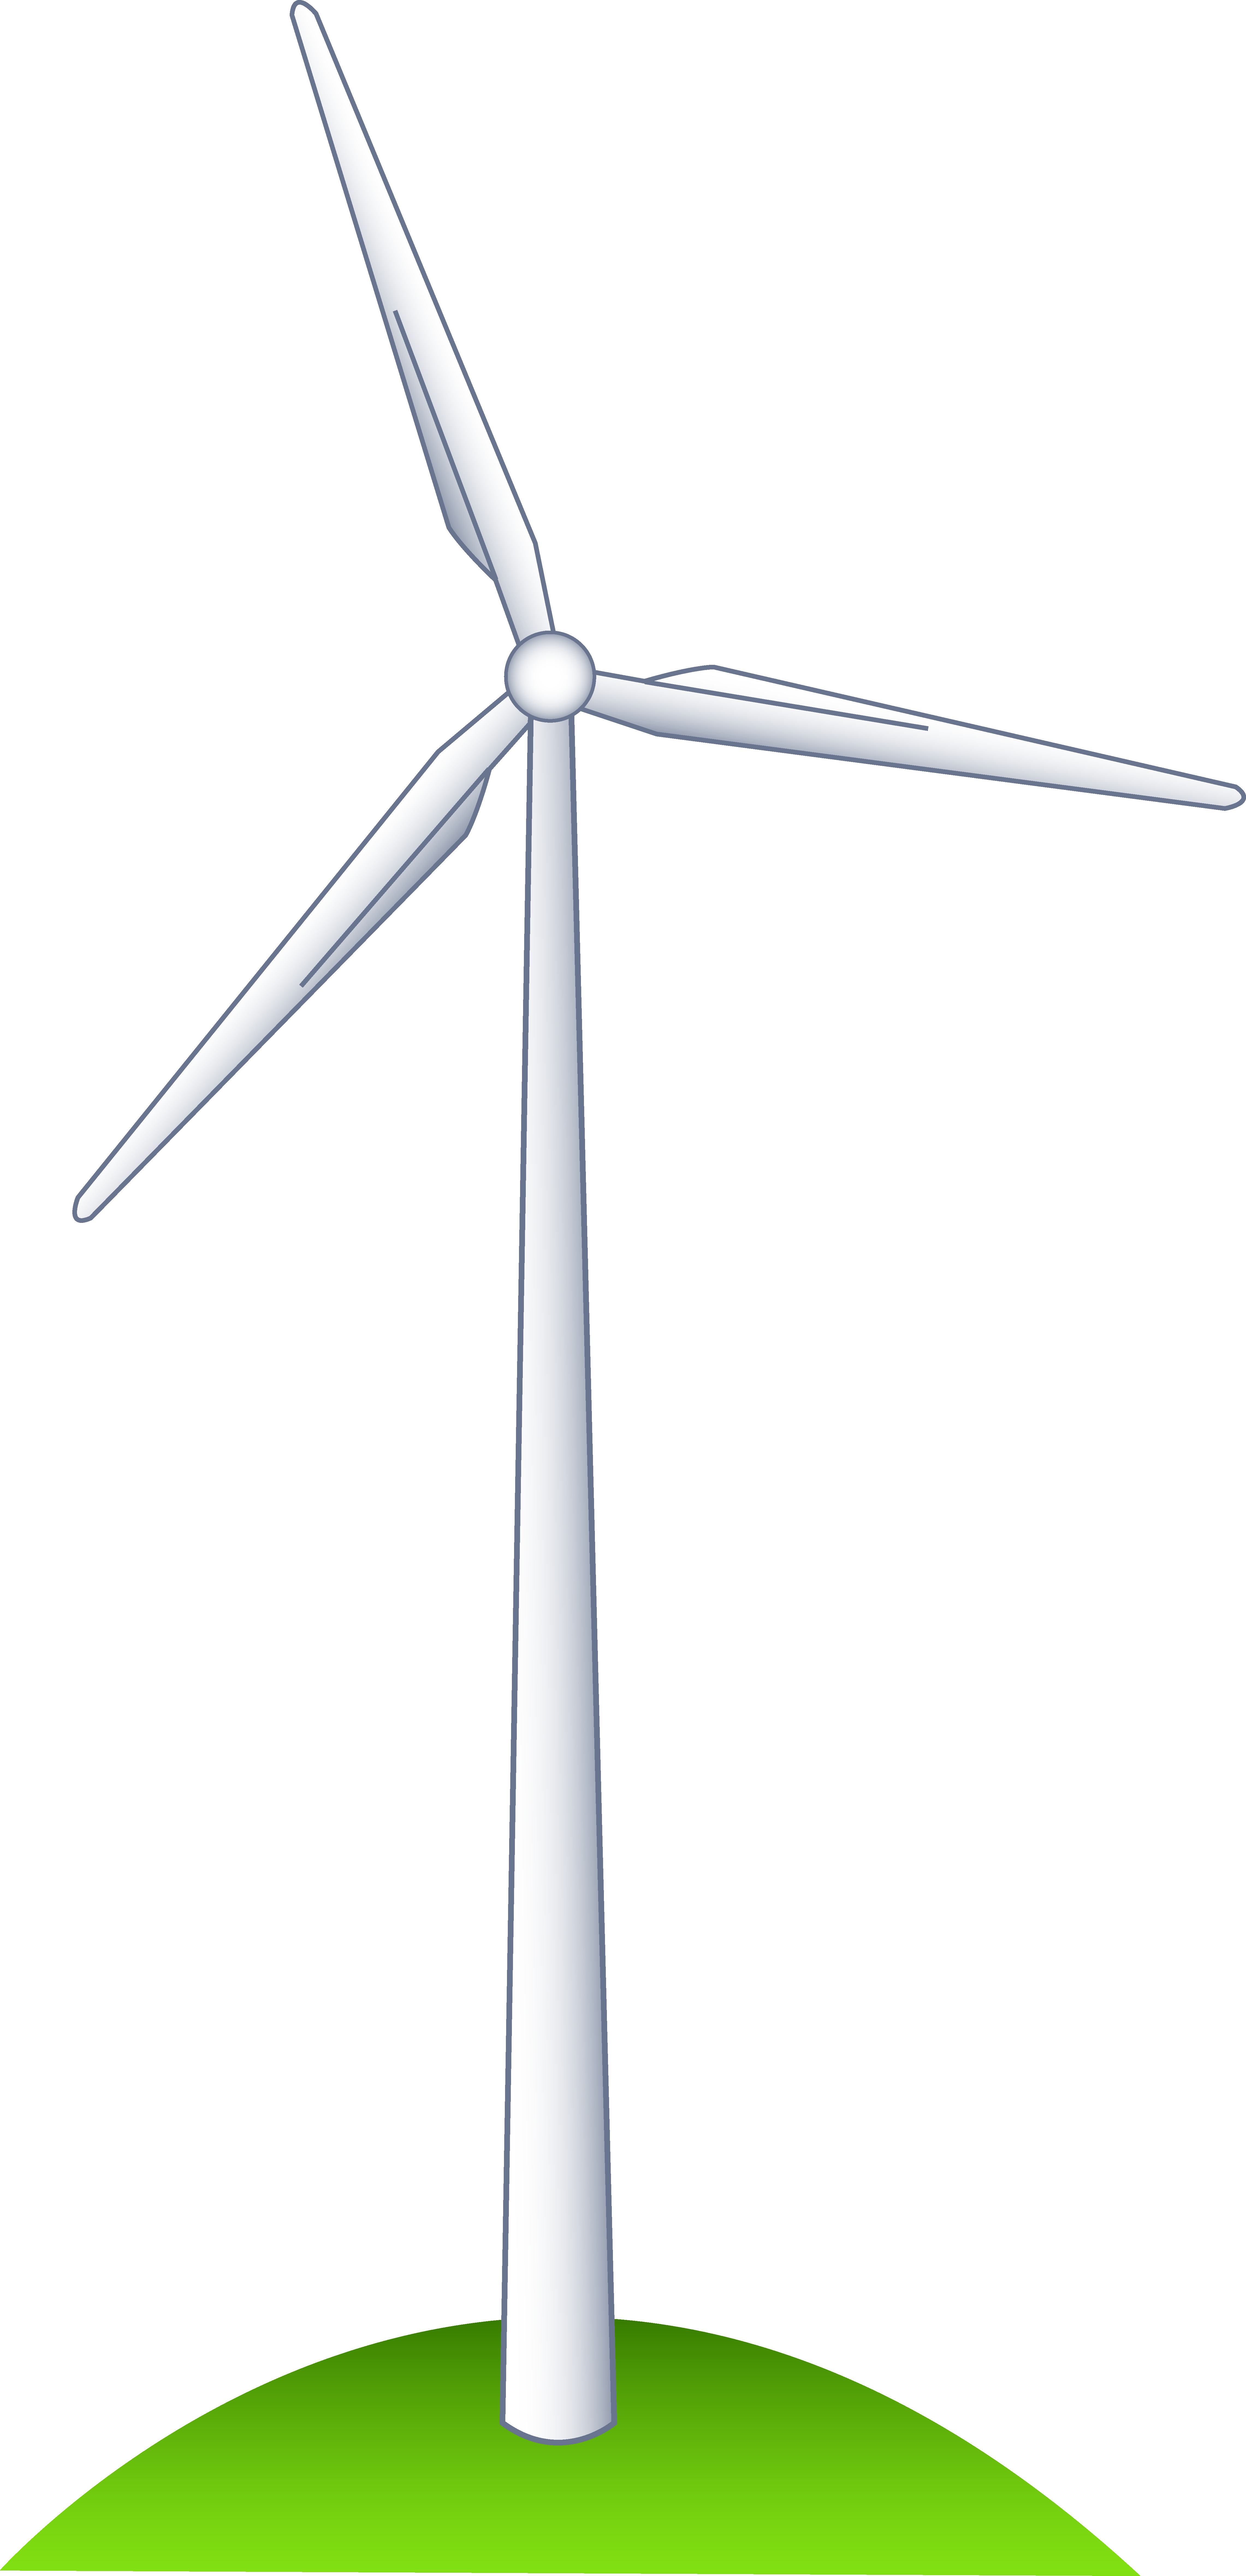 A Wind Turbine on a Hill